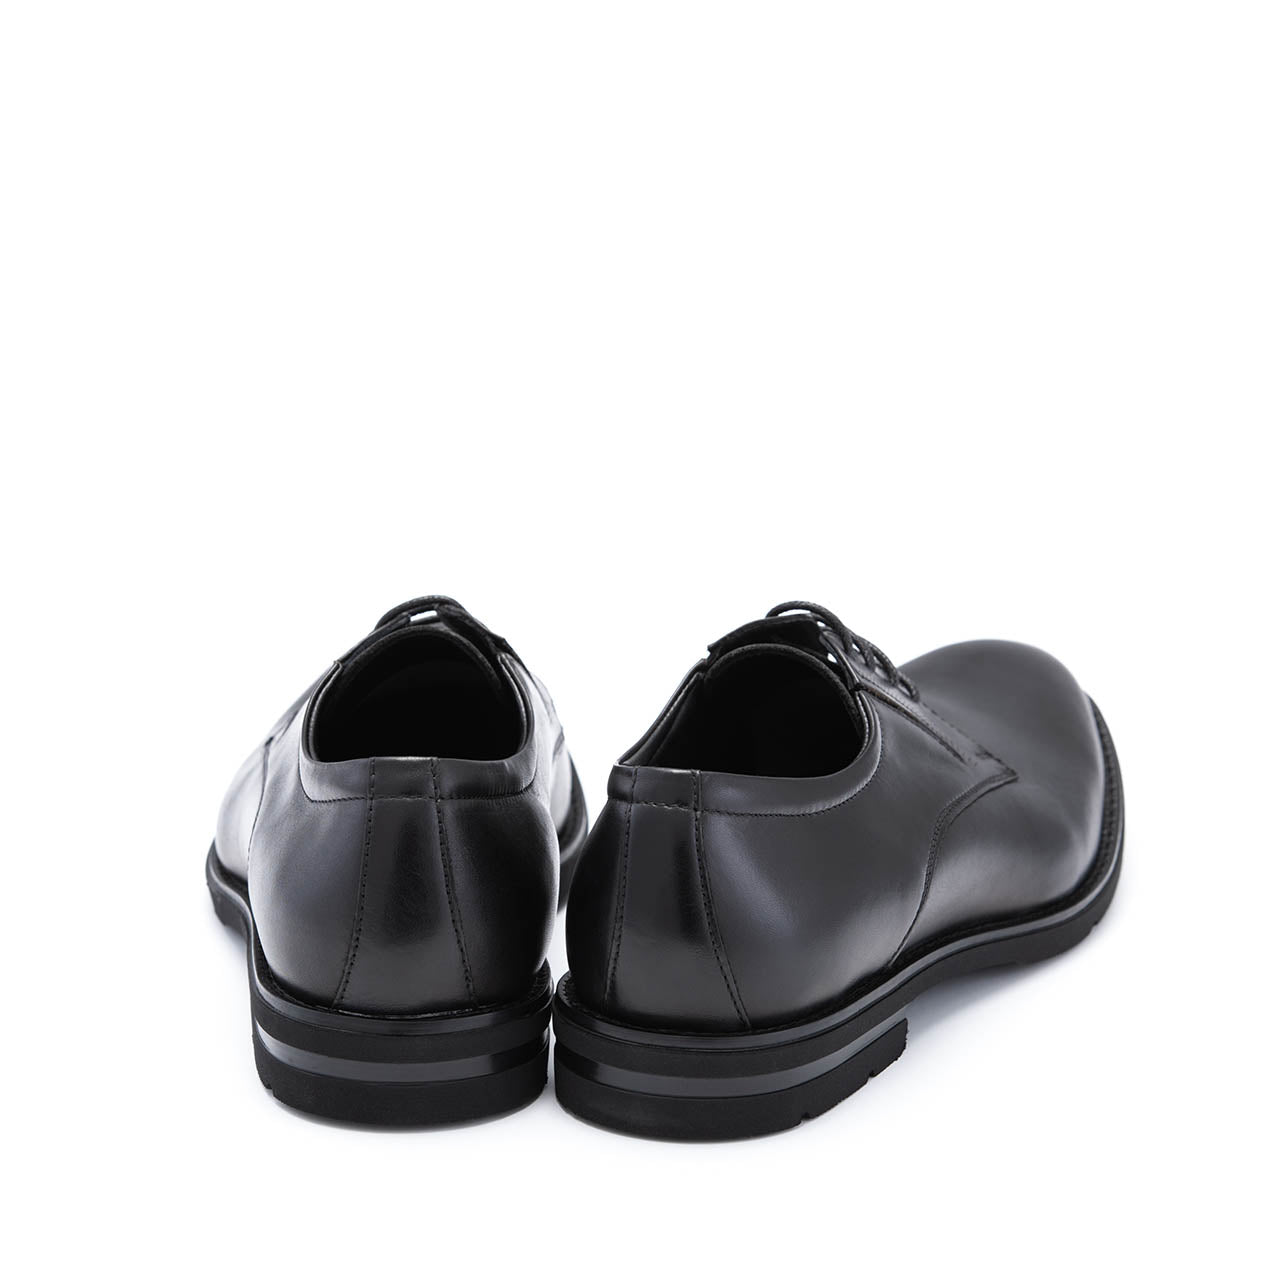 Pantofi eleganti barbati Aspen negru